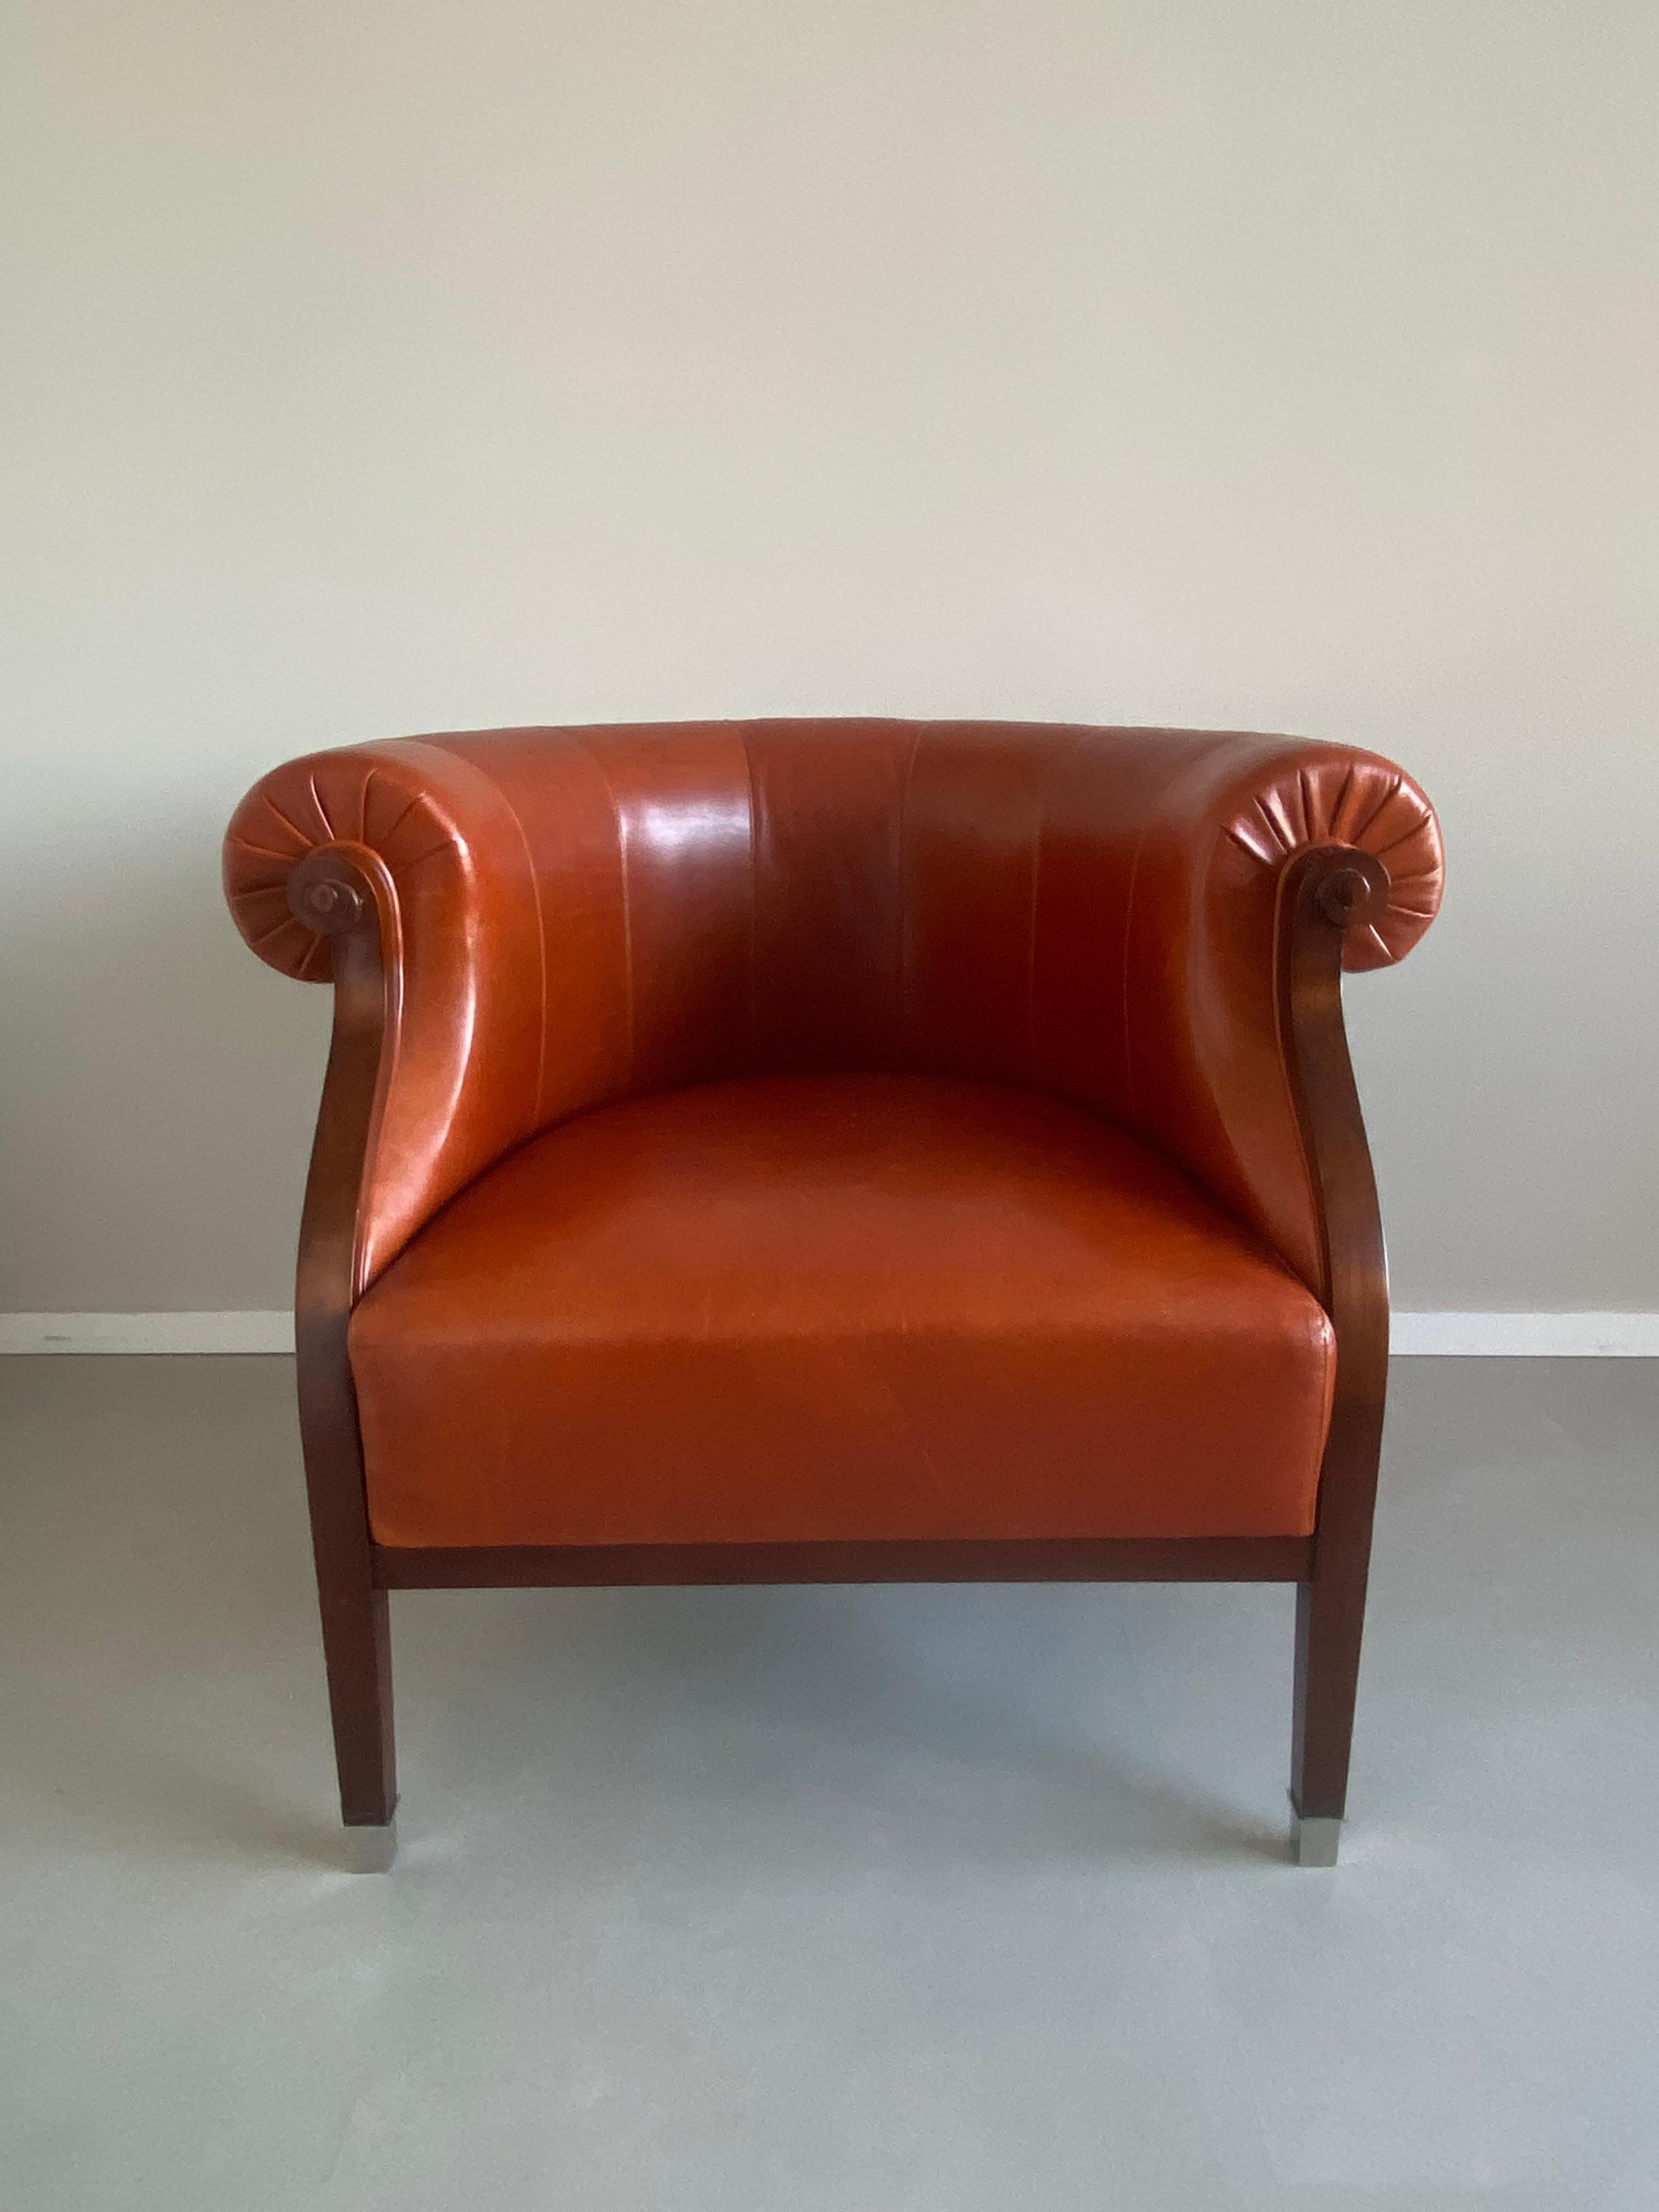 Eleganter italienischer Sessel, der von dem berühmten Annibale Colombo hergestellt wurde. Der Stuhl hat ein Untergestell aus Kirschholz, eine Sitzfläche, Rücken- und Armlehnen aus cognacfarbenem Leder und Details wie Füße aus Edelstahl. Dieses